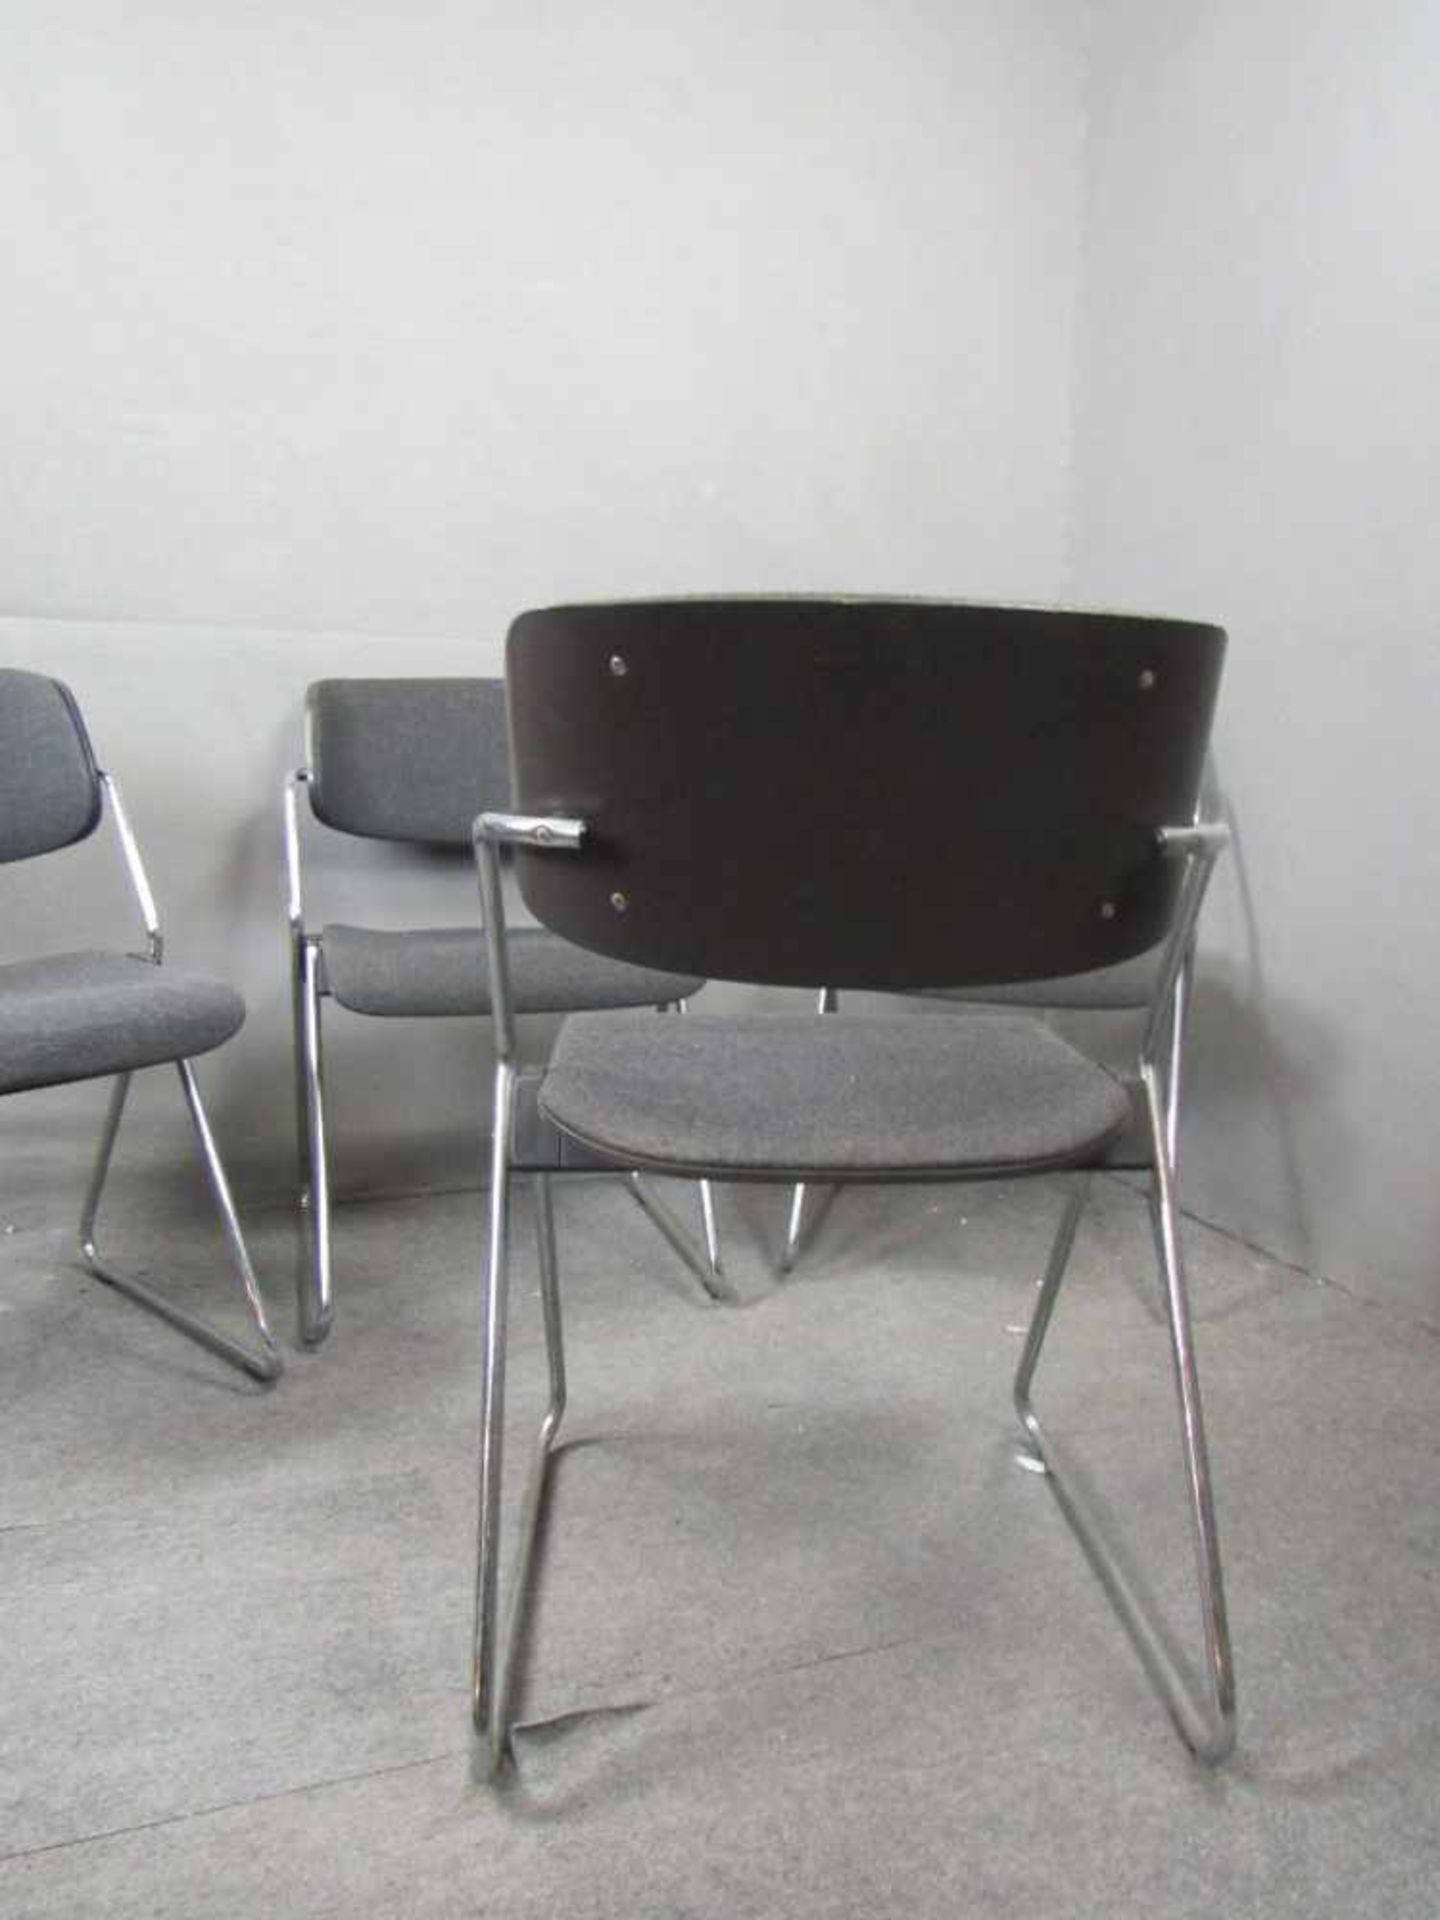 Space Age 60er Jahre vier Designerstühle gepolstert auf Chromgestell Hersteller Wilkhan stapelbar- - - Bild 3 aus 3